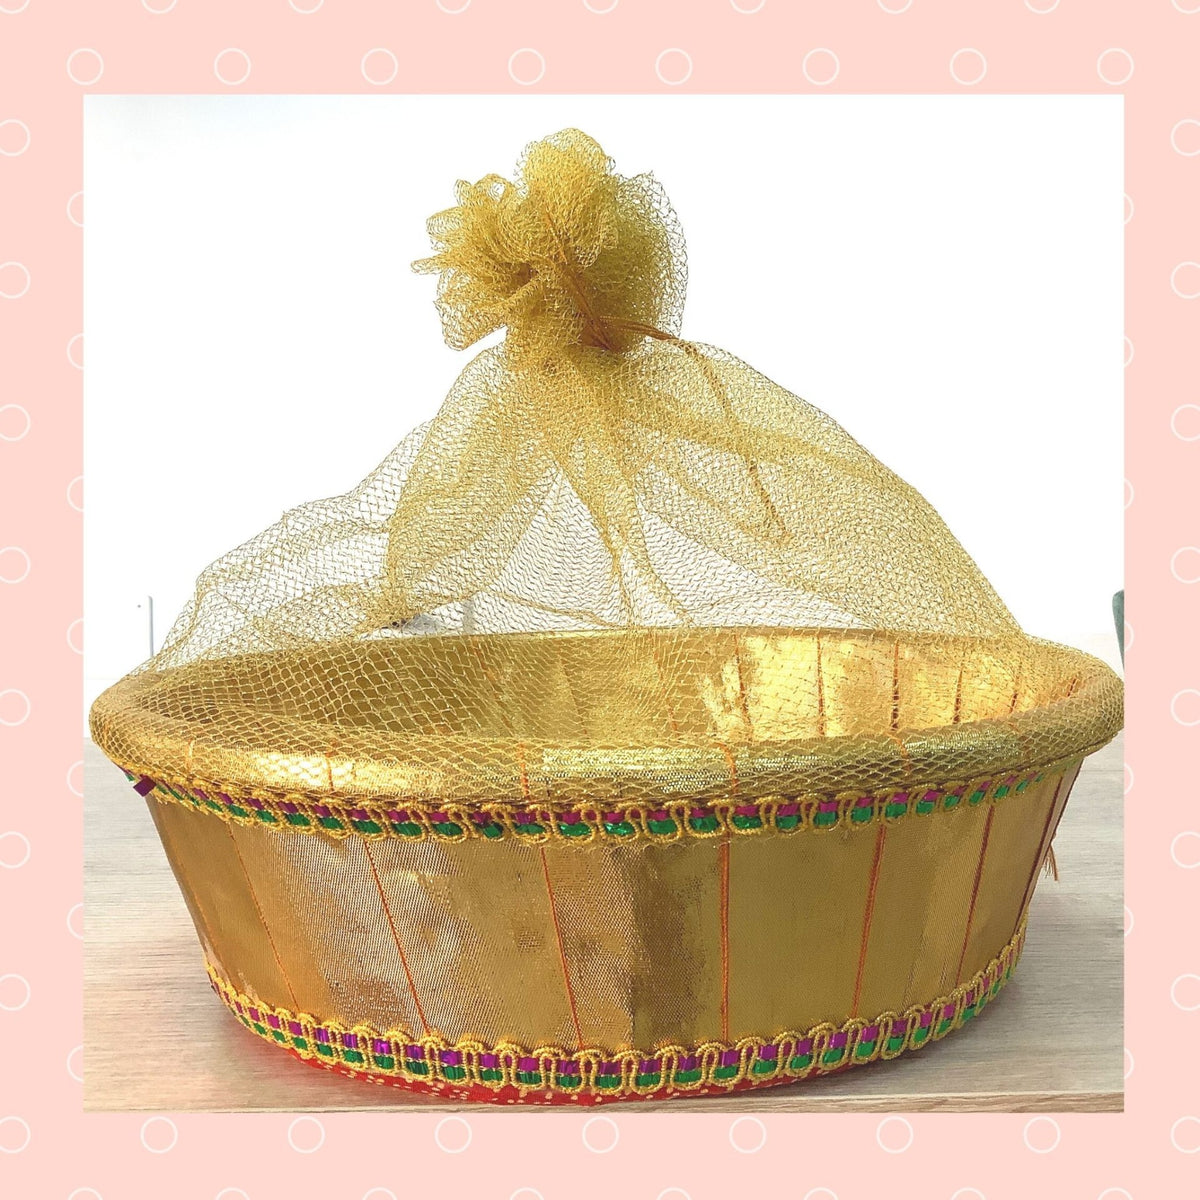 Canastas de regalo con Frutas – Universal Gift Baskets